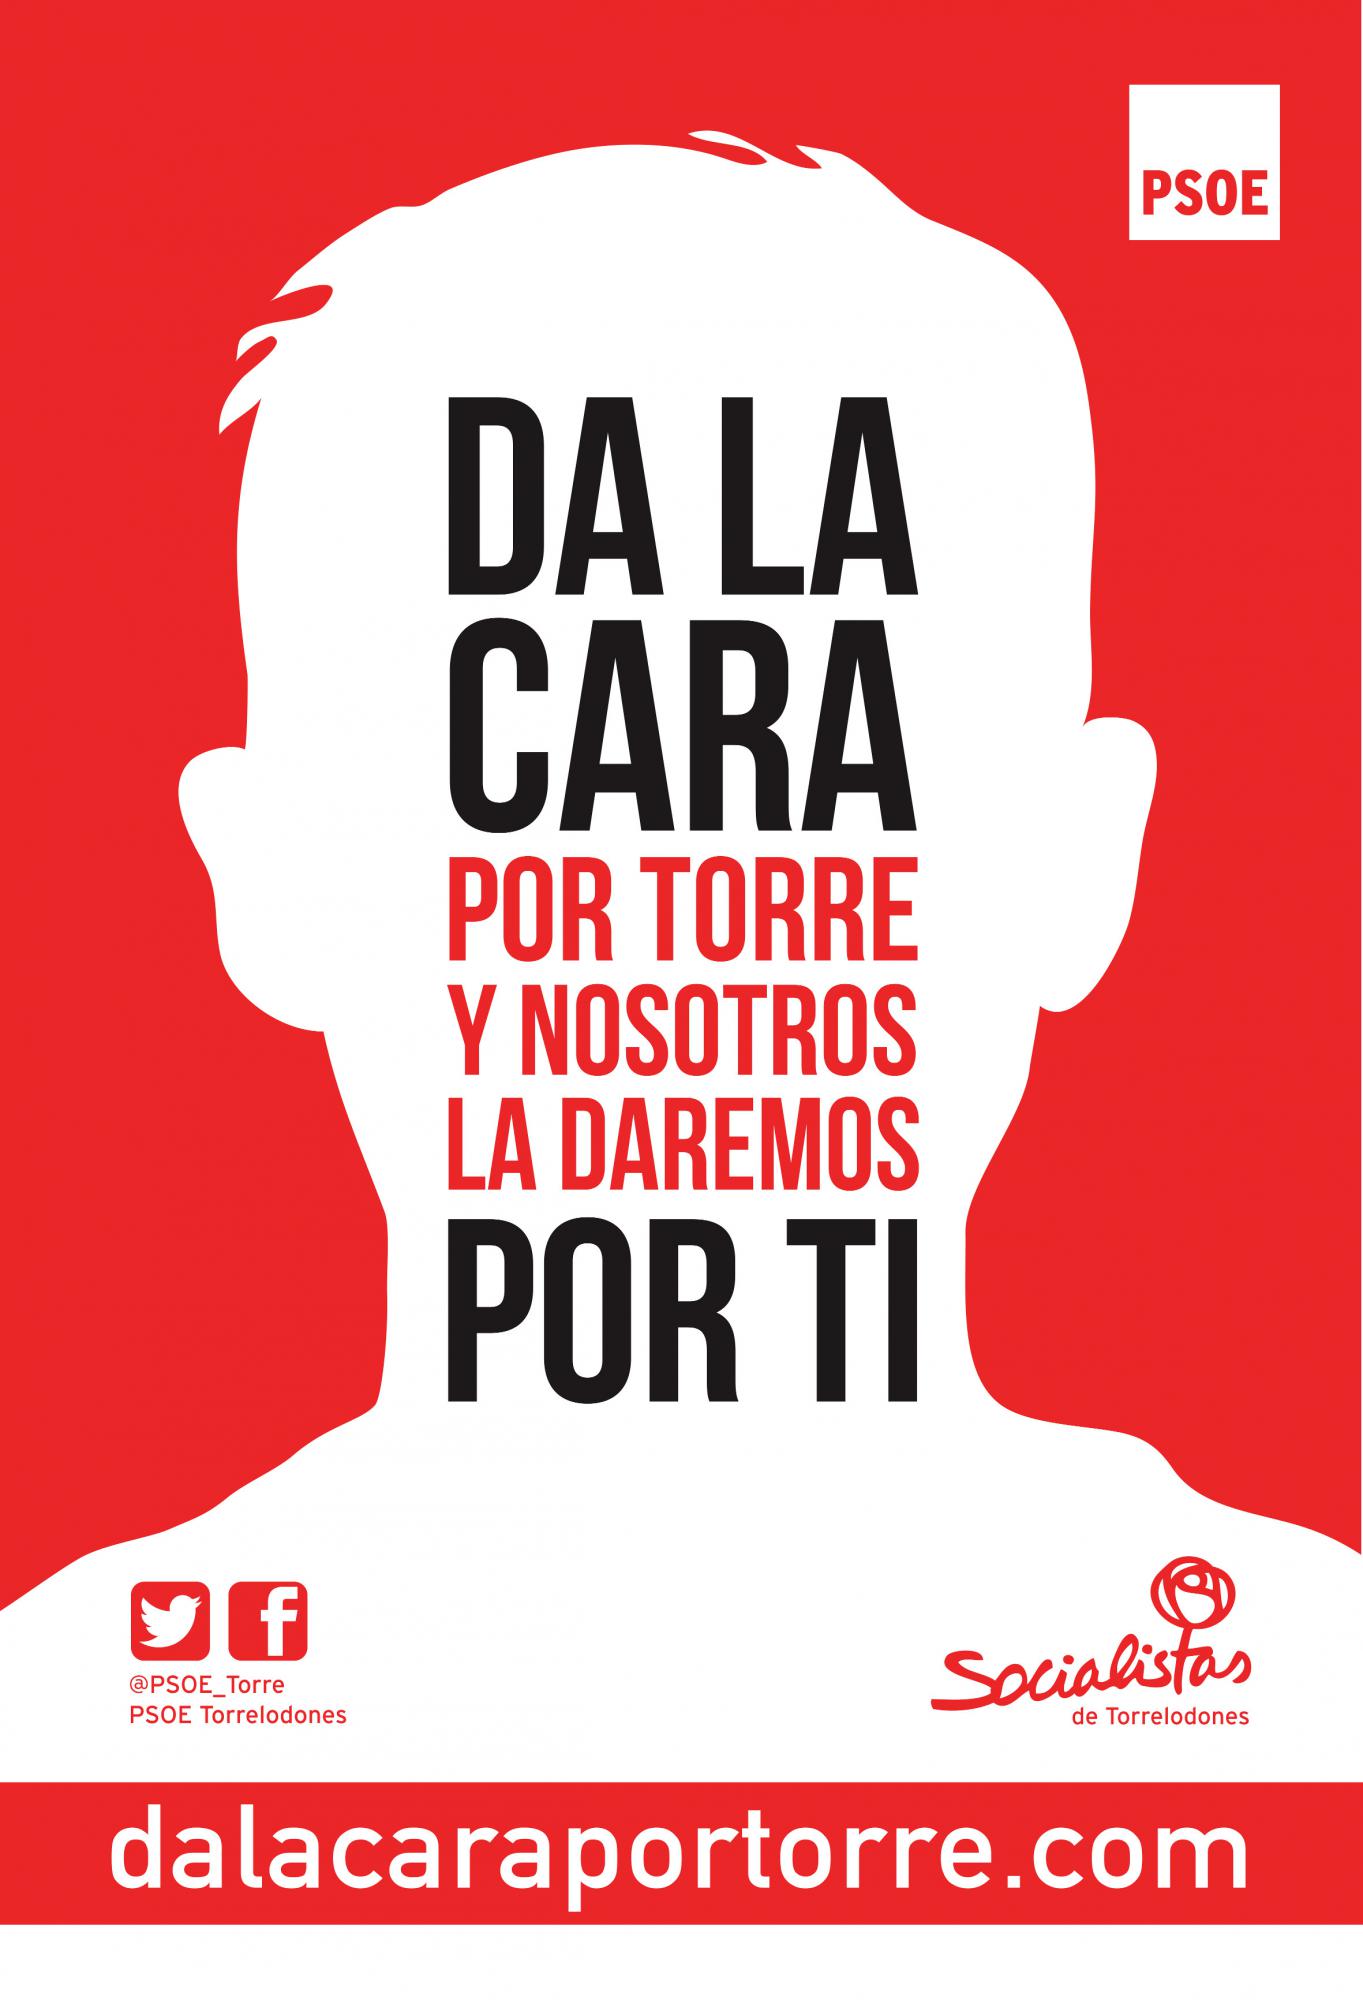 El PSOE de Torrelodones presenta su lema de campaña y su web